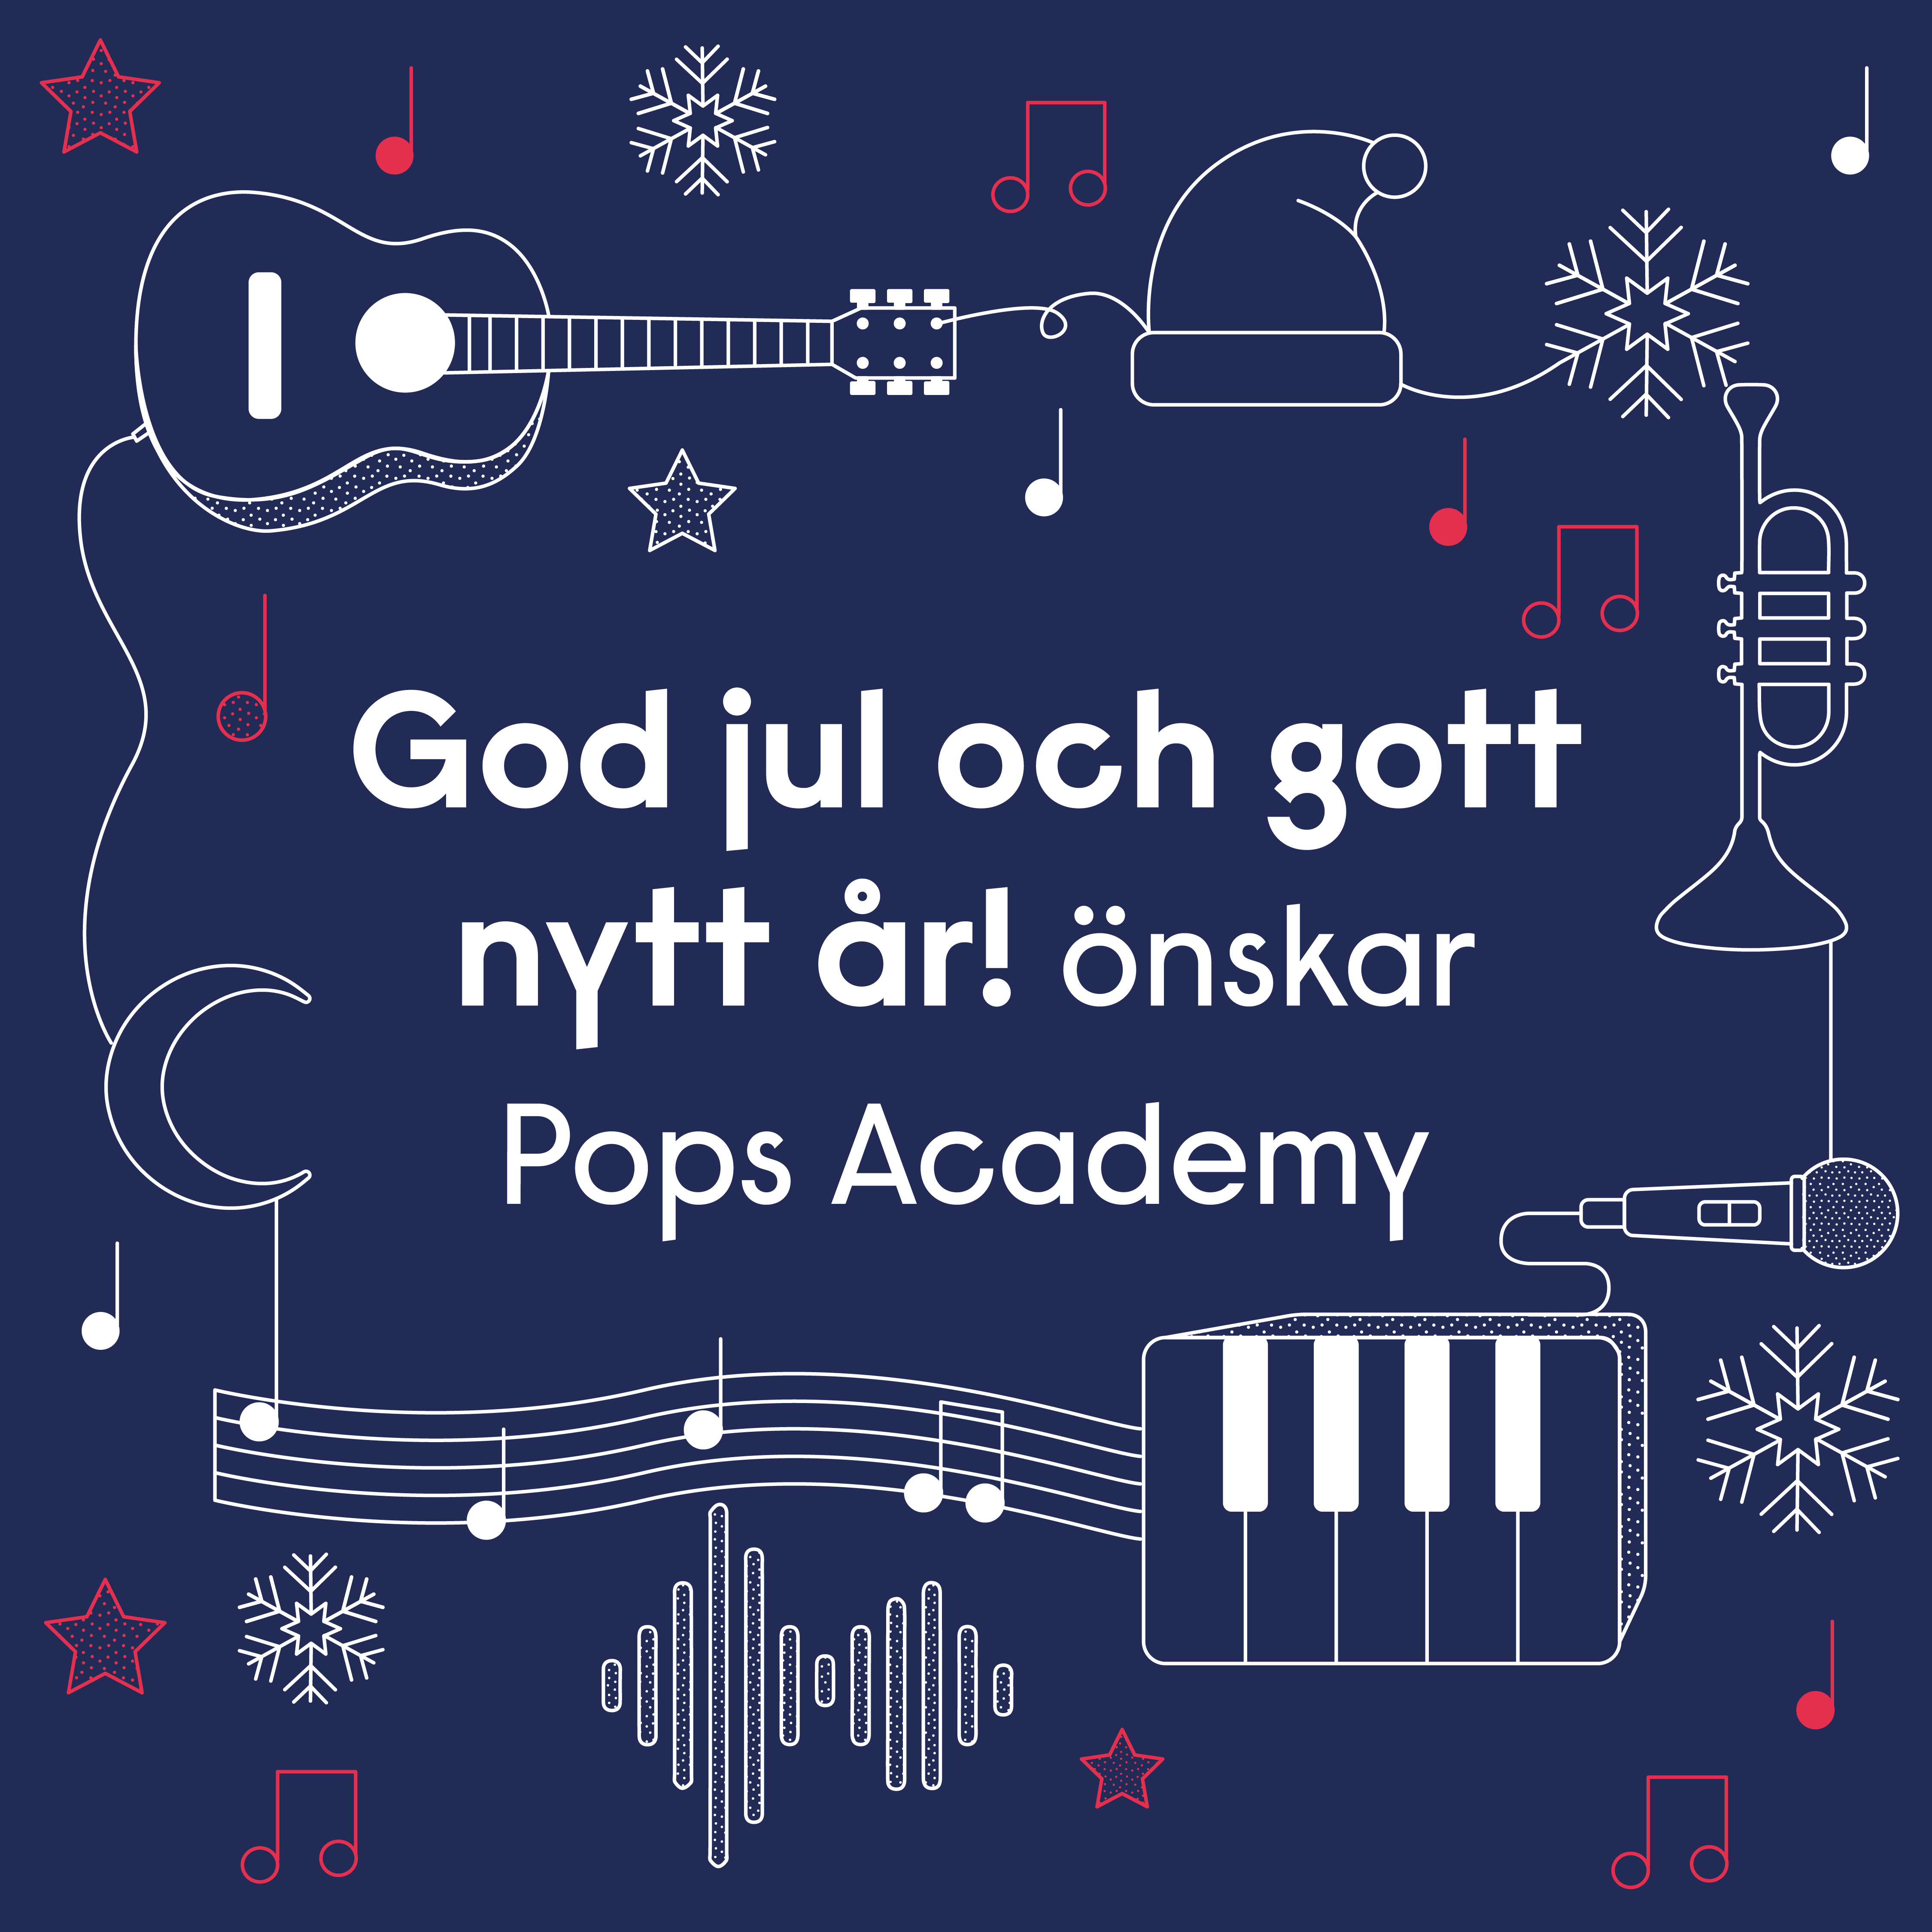 God jul och gott nytt år! önskar Pops Academy.